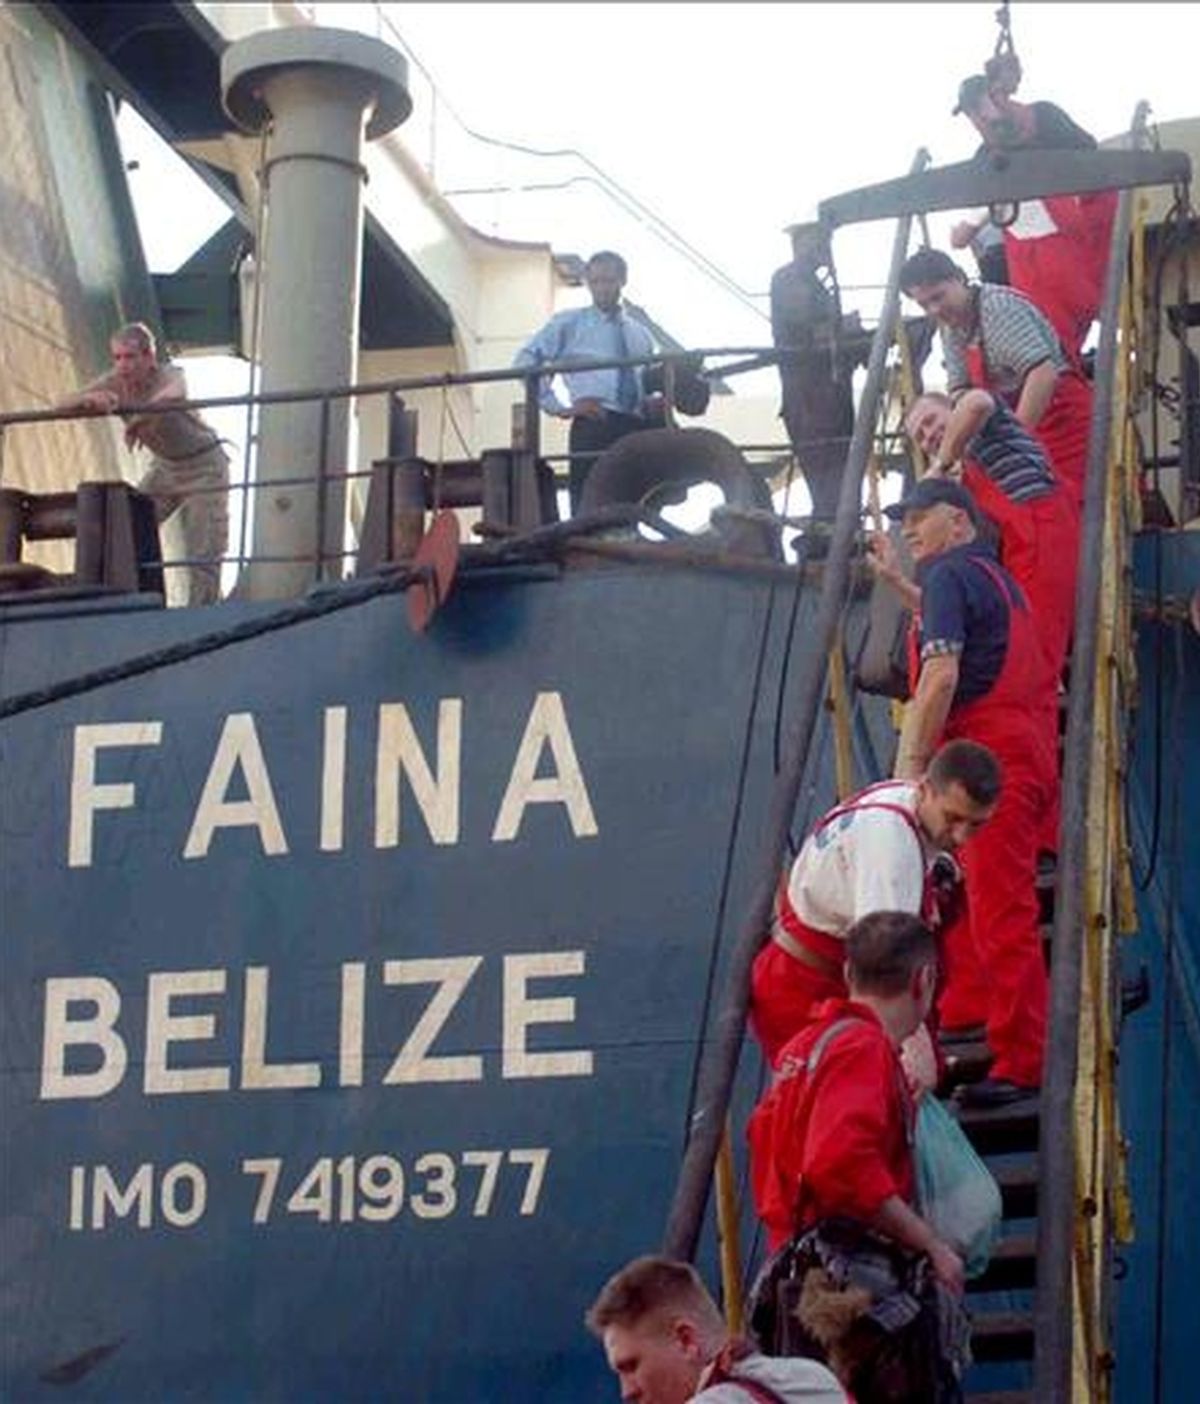 La tripulación del carguero ucraniano Faina, que fue secuestrado en las costas de Somalia y liberado tras pagar a los piratas un rescate de 3,2 millones de dólares, desembarcan en el puerto de Mombasa (Kenia), el 12 de febrero pasado. EFE/Archivo